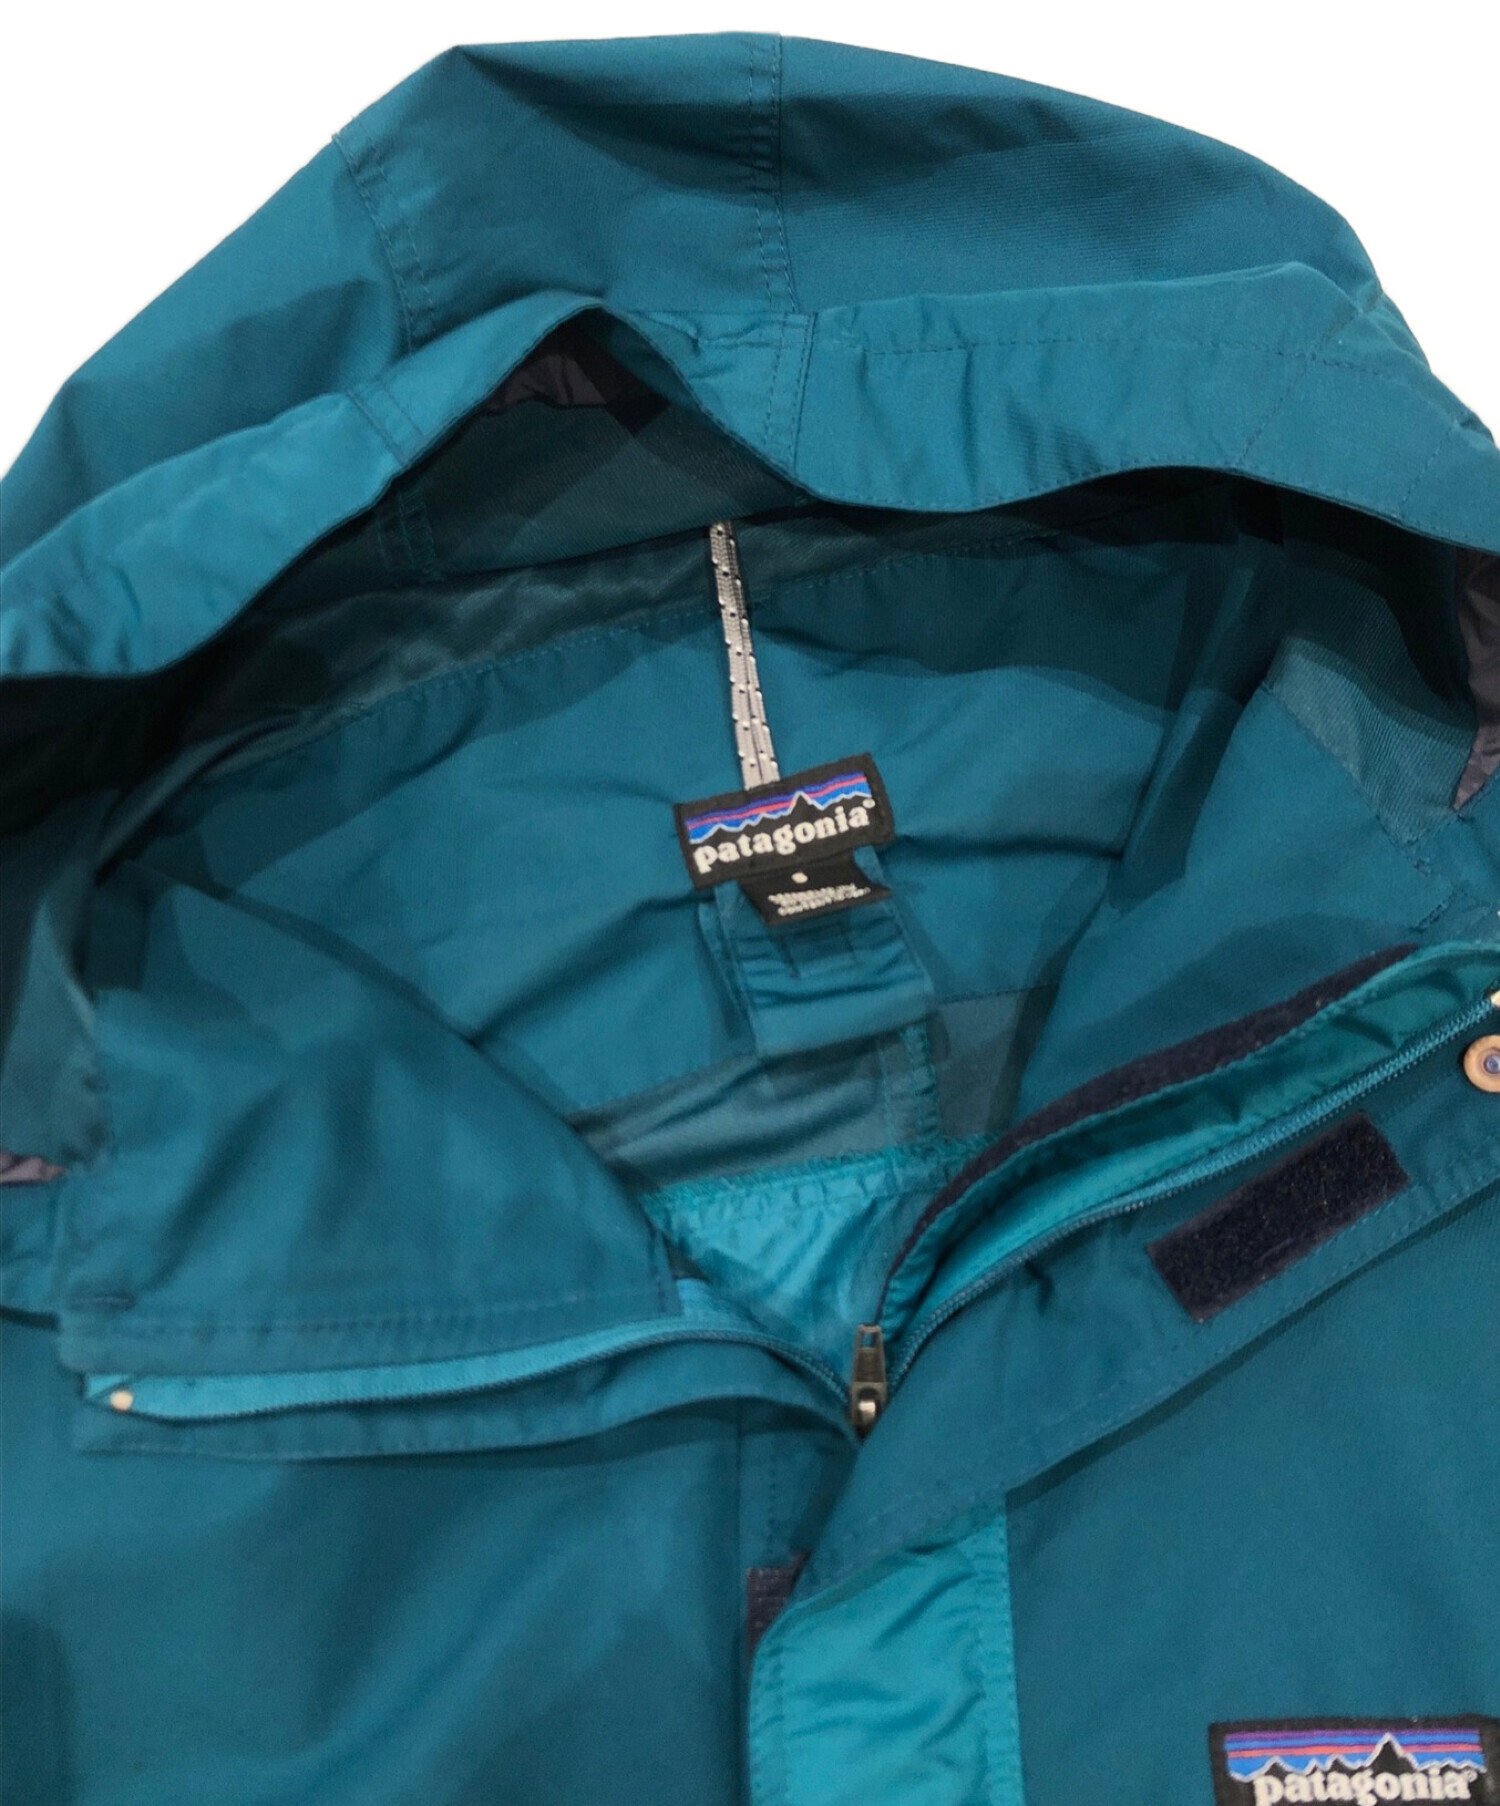 Patagonia (パタゴニア) 00sエッセンシャルジャケット グリーン サイズ:S